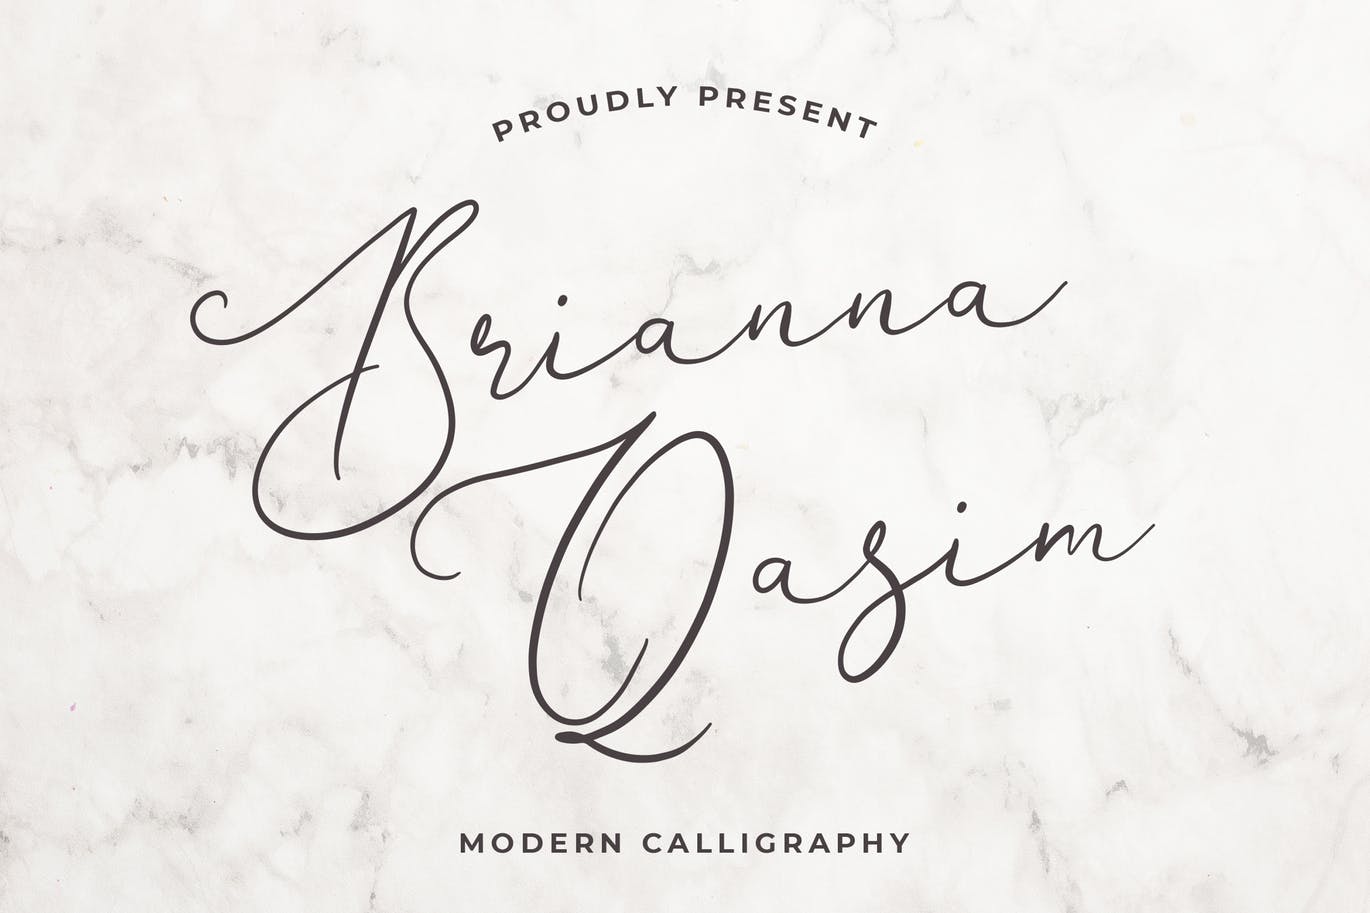 独特手写连笔书法英文字体第一素材精选 Brianna Qasim Beautiful Calligraphy Font插图